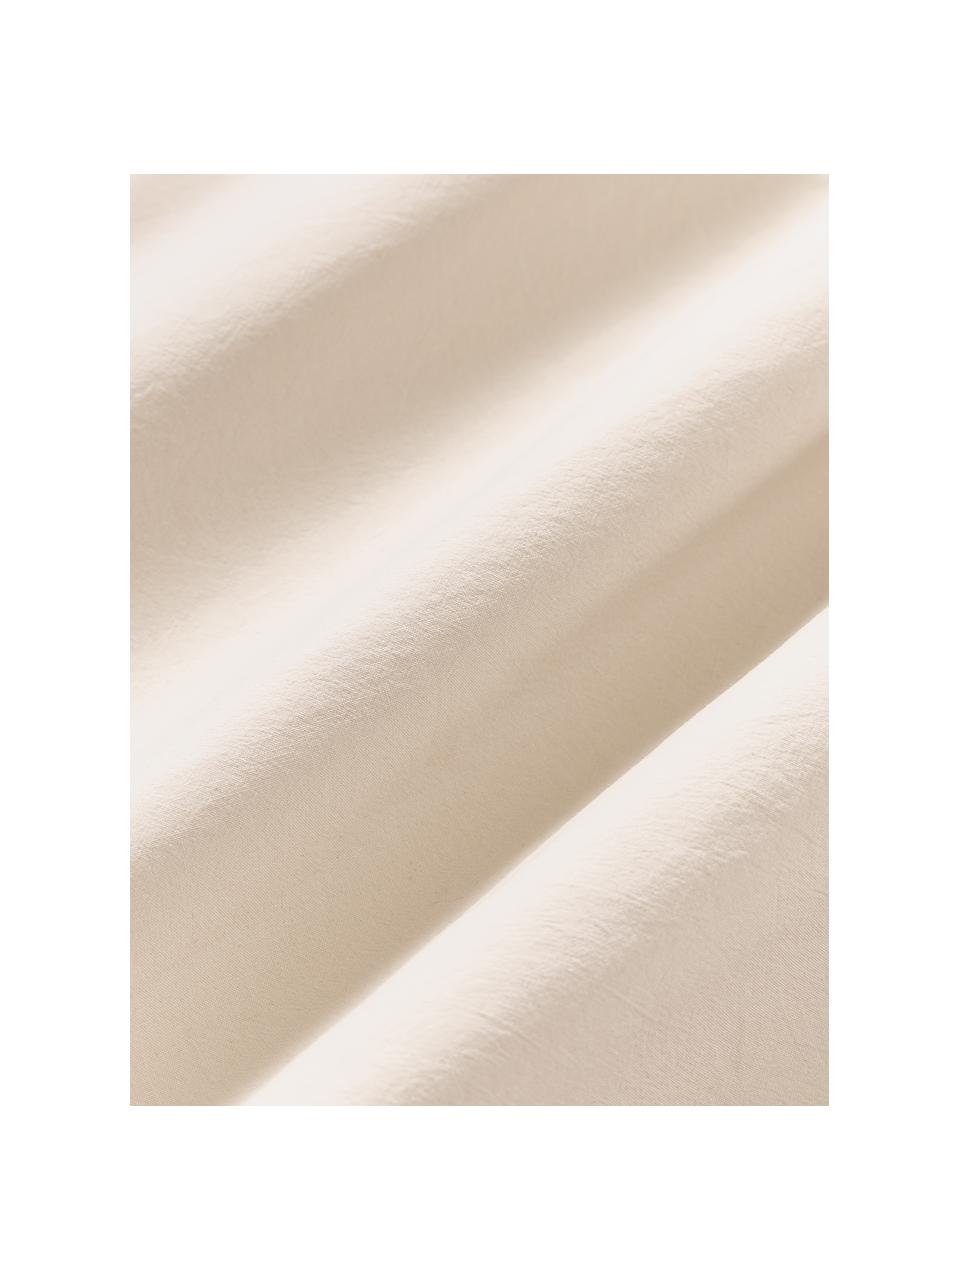 Funda de almohada de algodón lavado Darlyn, 100% algodón
Densidad de hilo 150 TC, calidad estándar

El algodón da una sensación agradable y suave en la piel, absorbe bien la humedad y es adecuado para personas alérgicas.

Este tejido a sido sometido a un proceso de lavado especial que le da un aspecto Stonewash irregular y resistente, pero siendo suave al tacto, flexible y cómodo. Además, su aspecto arrugado natural hace que no necesite planchado.

El material utilizado para este producto ha sido probado contra sustancias nocivas y está certificado según el STANDARD 100 por OEKO-TEX®, 4265CIT, CITEVE., Beige, An 45 x L 110 cm